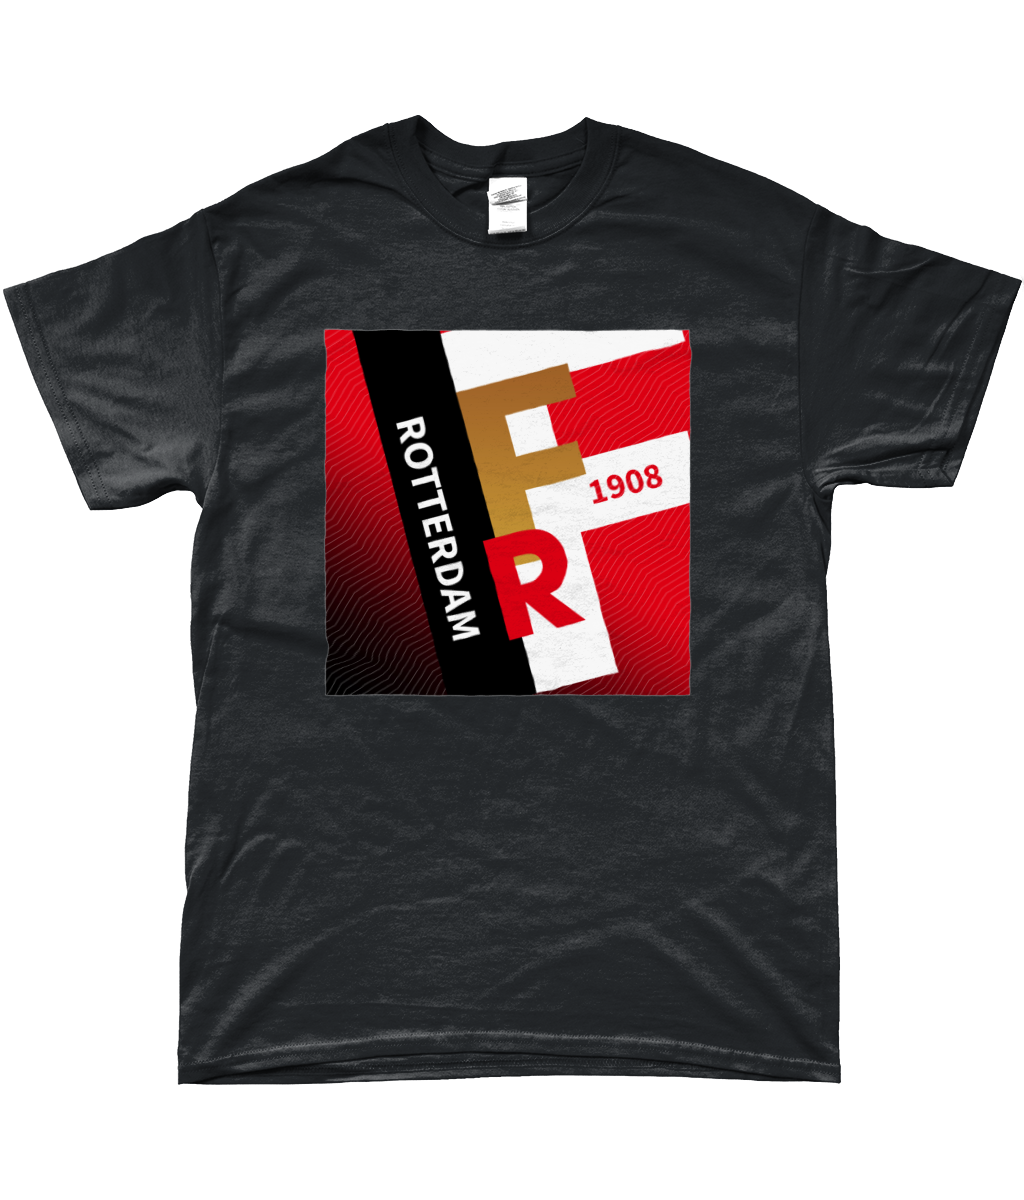 Feyenoord - Rotterdam 1908 T-Shirt